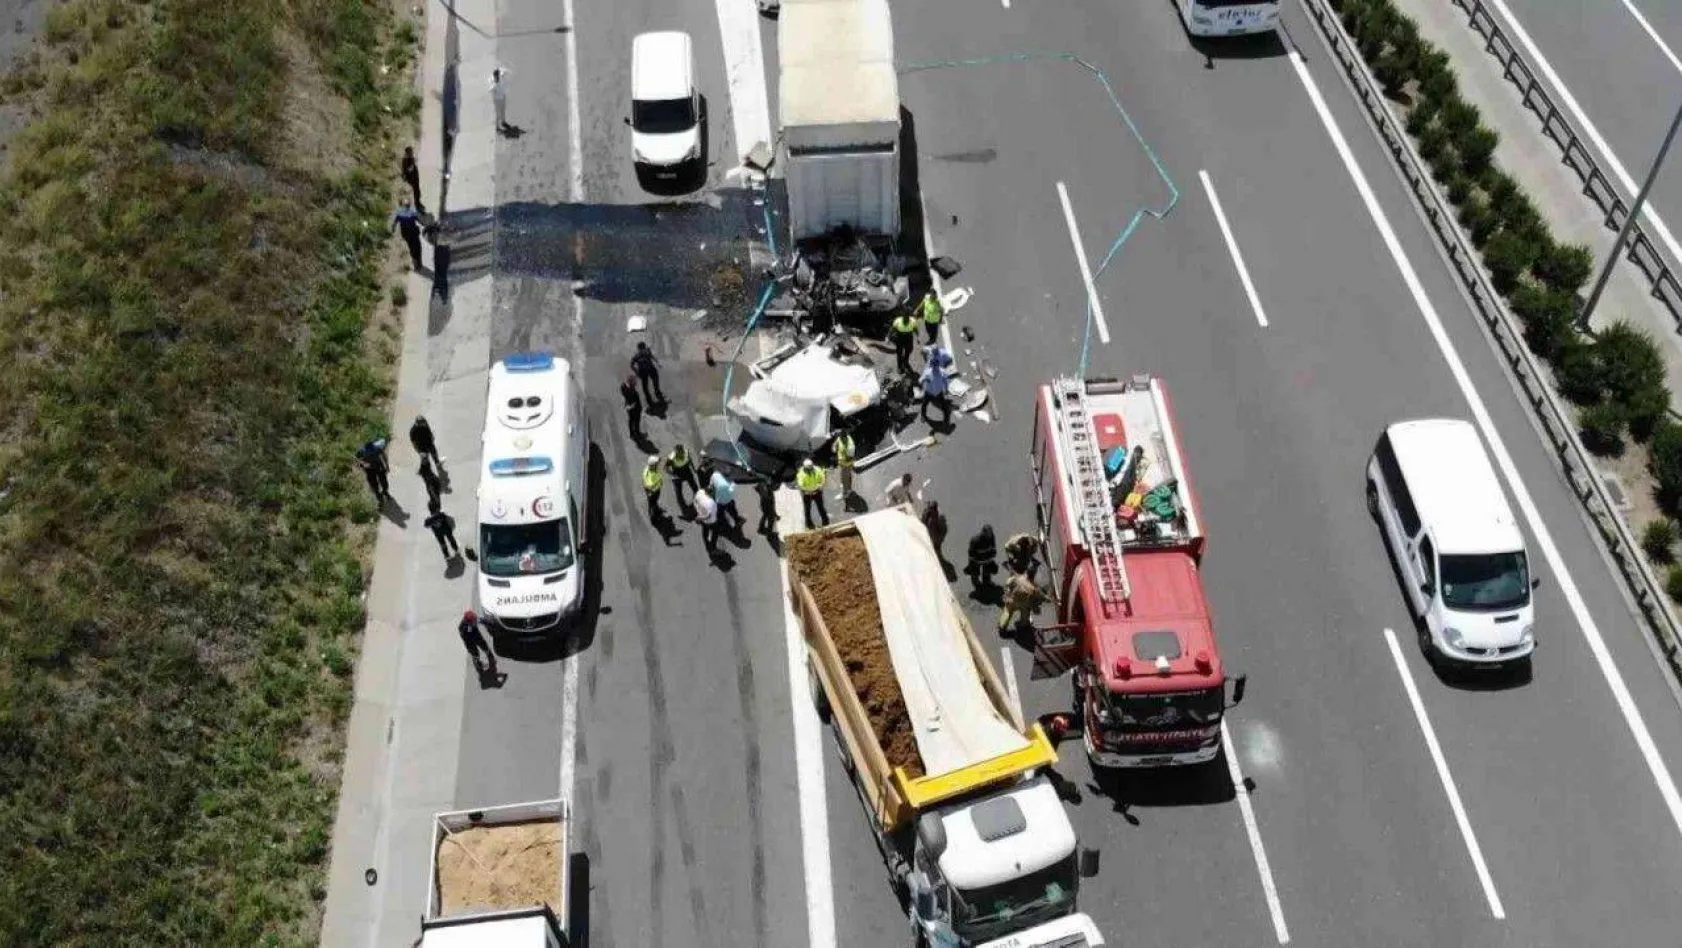 Kuzey Marmara Otoyolu'ndaki feci kazada kamyon ikiye bölündü: 1 ölü